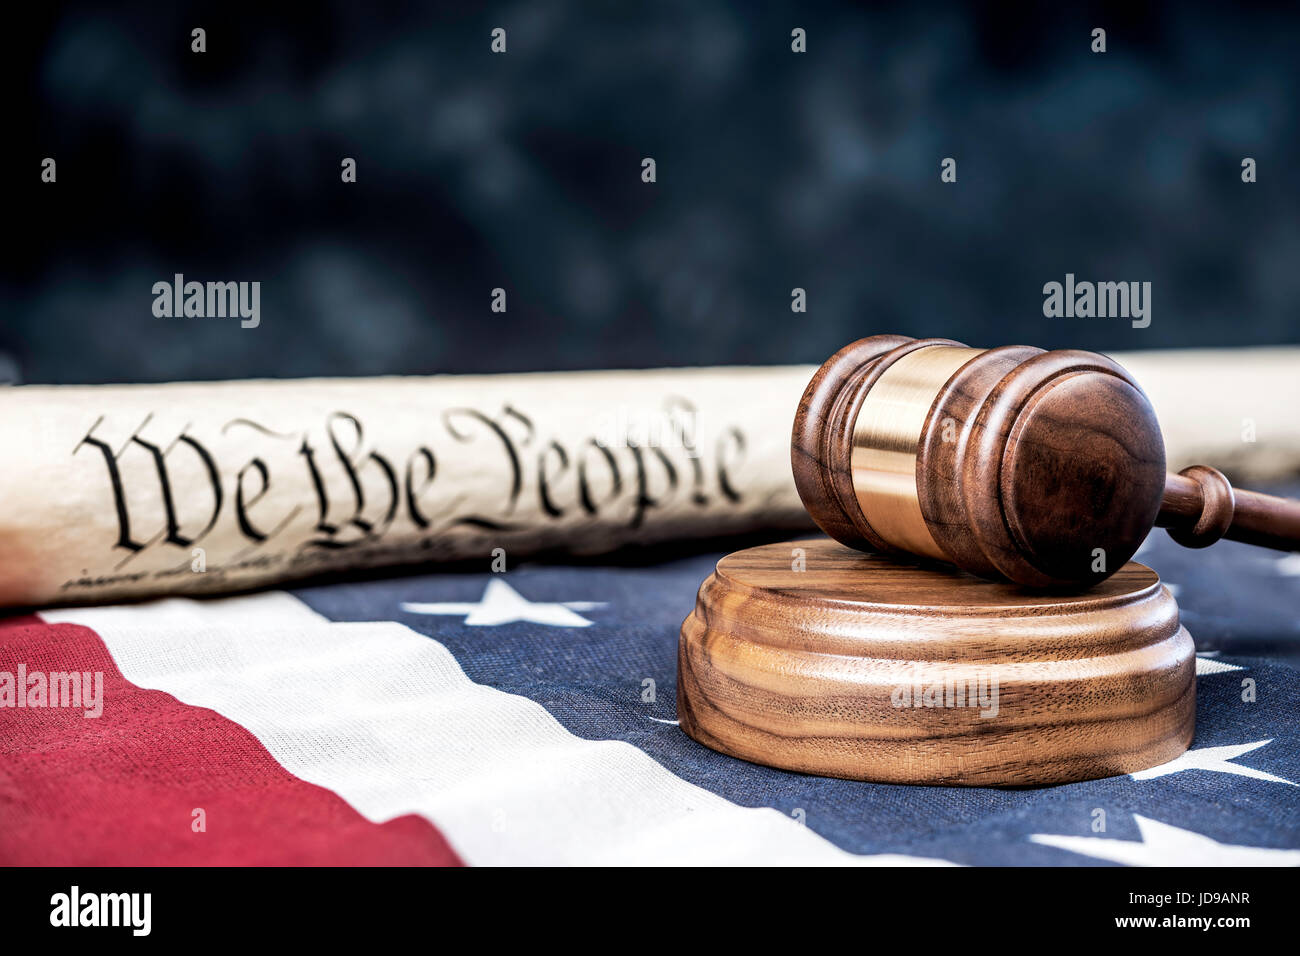 Verfassung der Vereinigten Staaten auf eine amerikanische Flagge mit einem Hammer im Vordergrund aufgerollt. Raum für Kopie entlang der oberen Hälfte des Bildes. Stockfoto